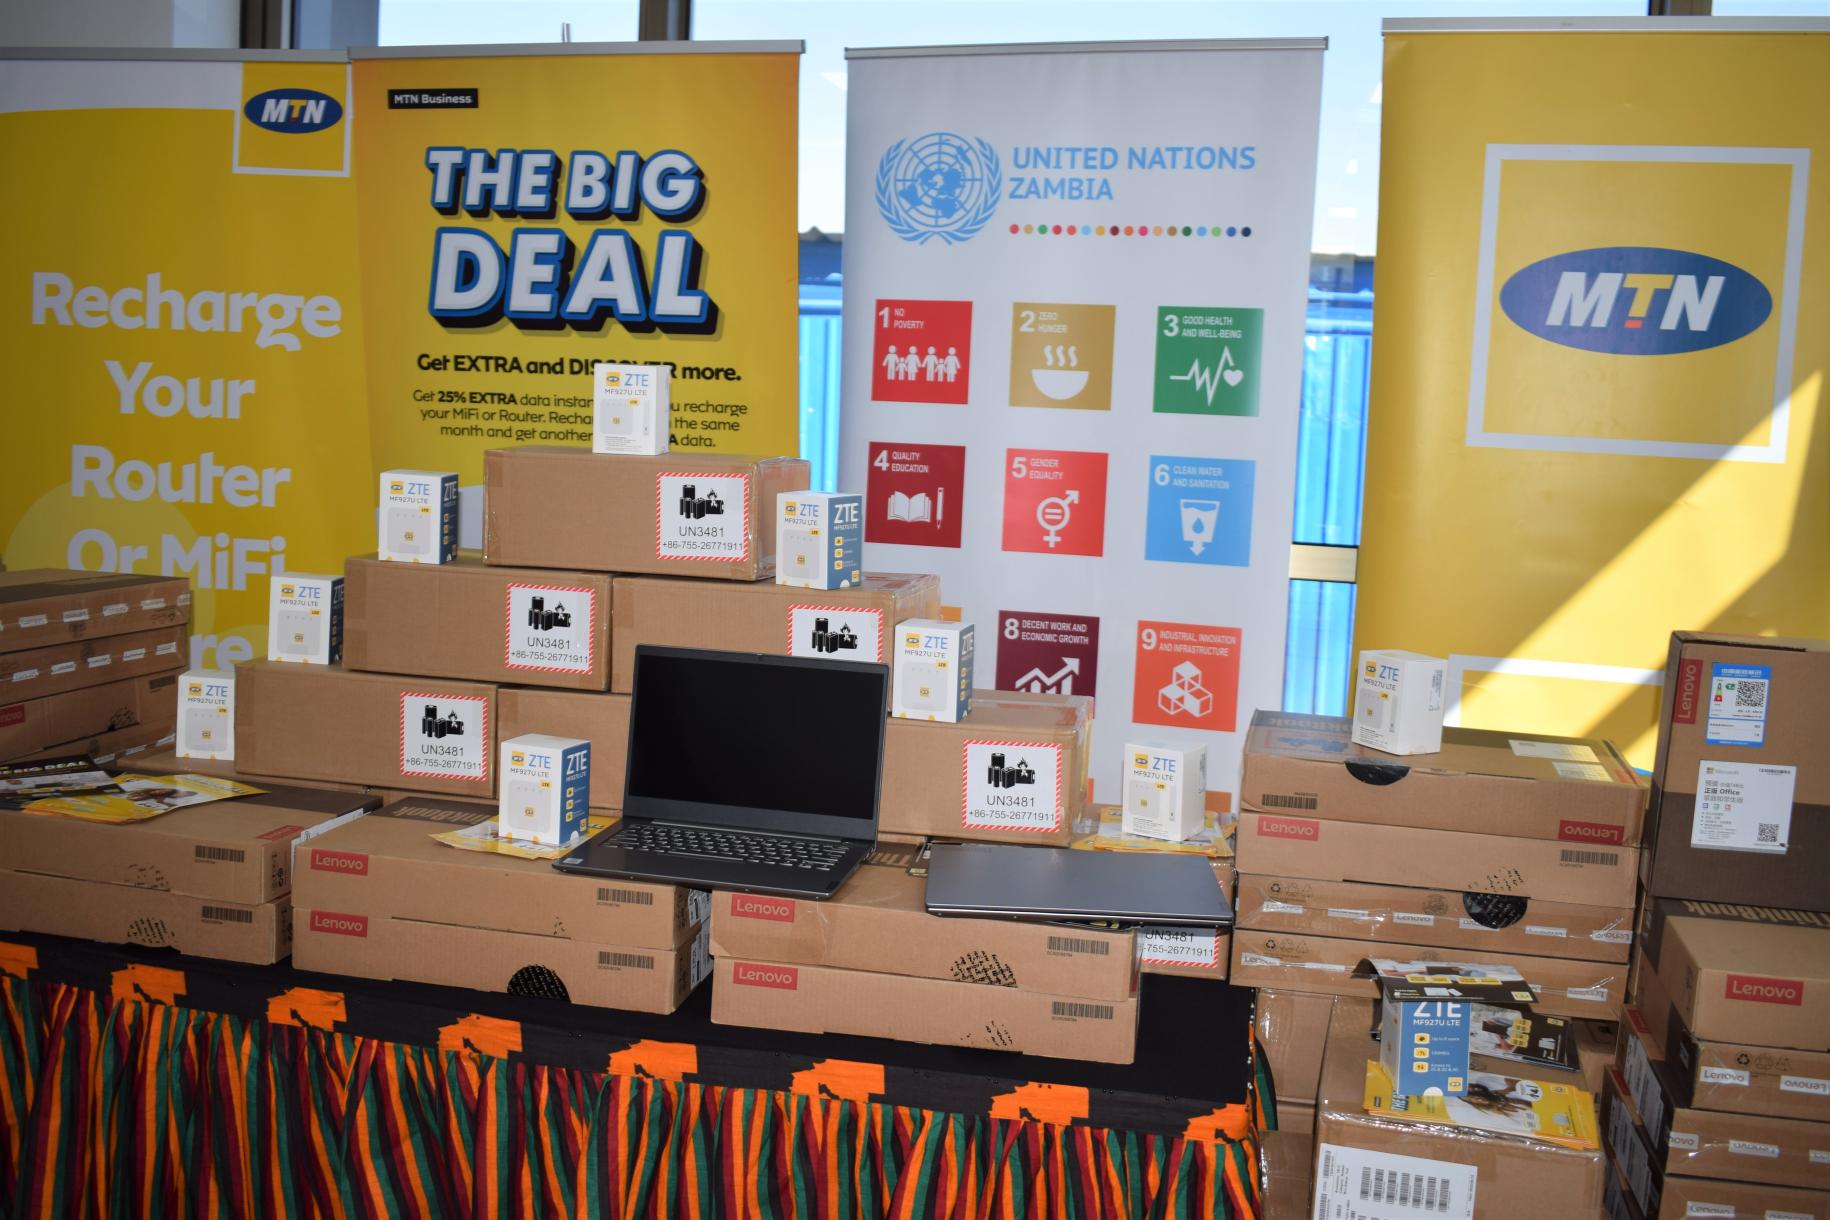 Equipo digital proporcionado por la ONU en Zambia para apoyar las operaciones del gobierno durante el brote de COVID-19.